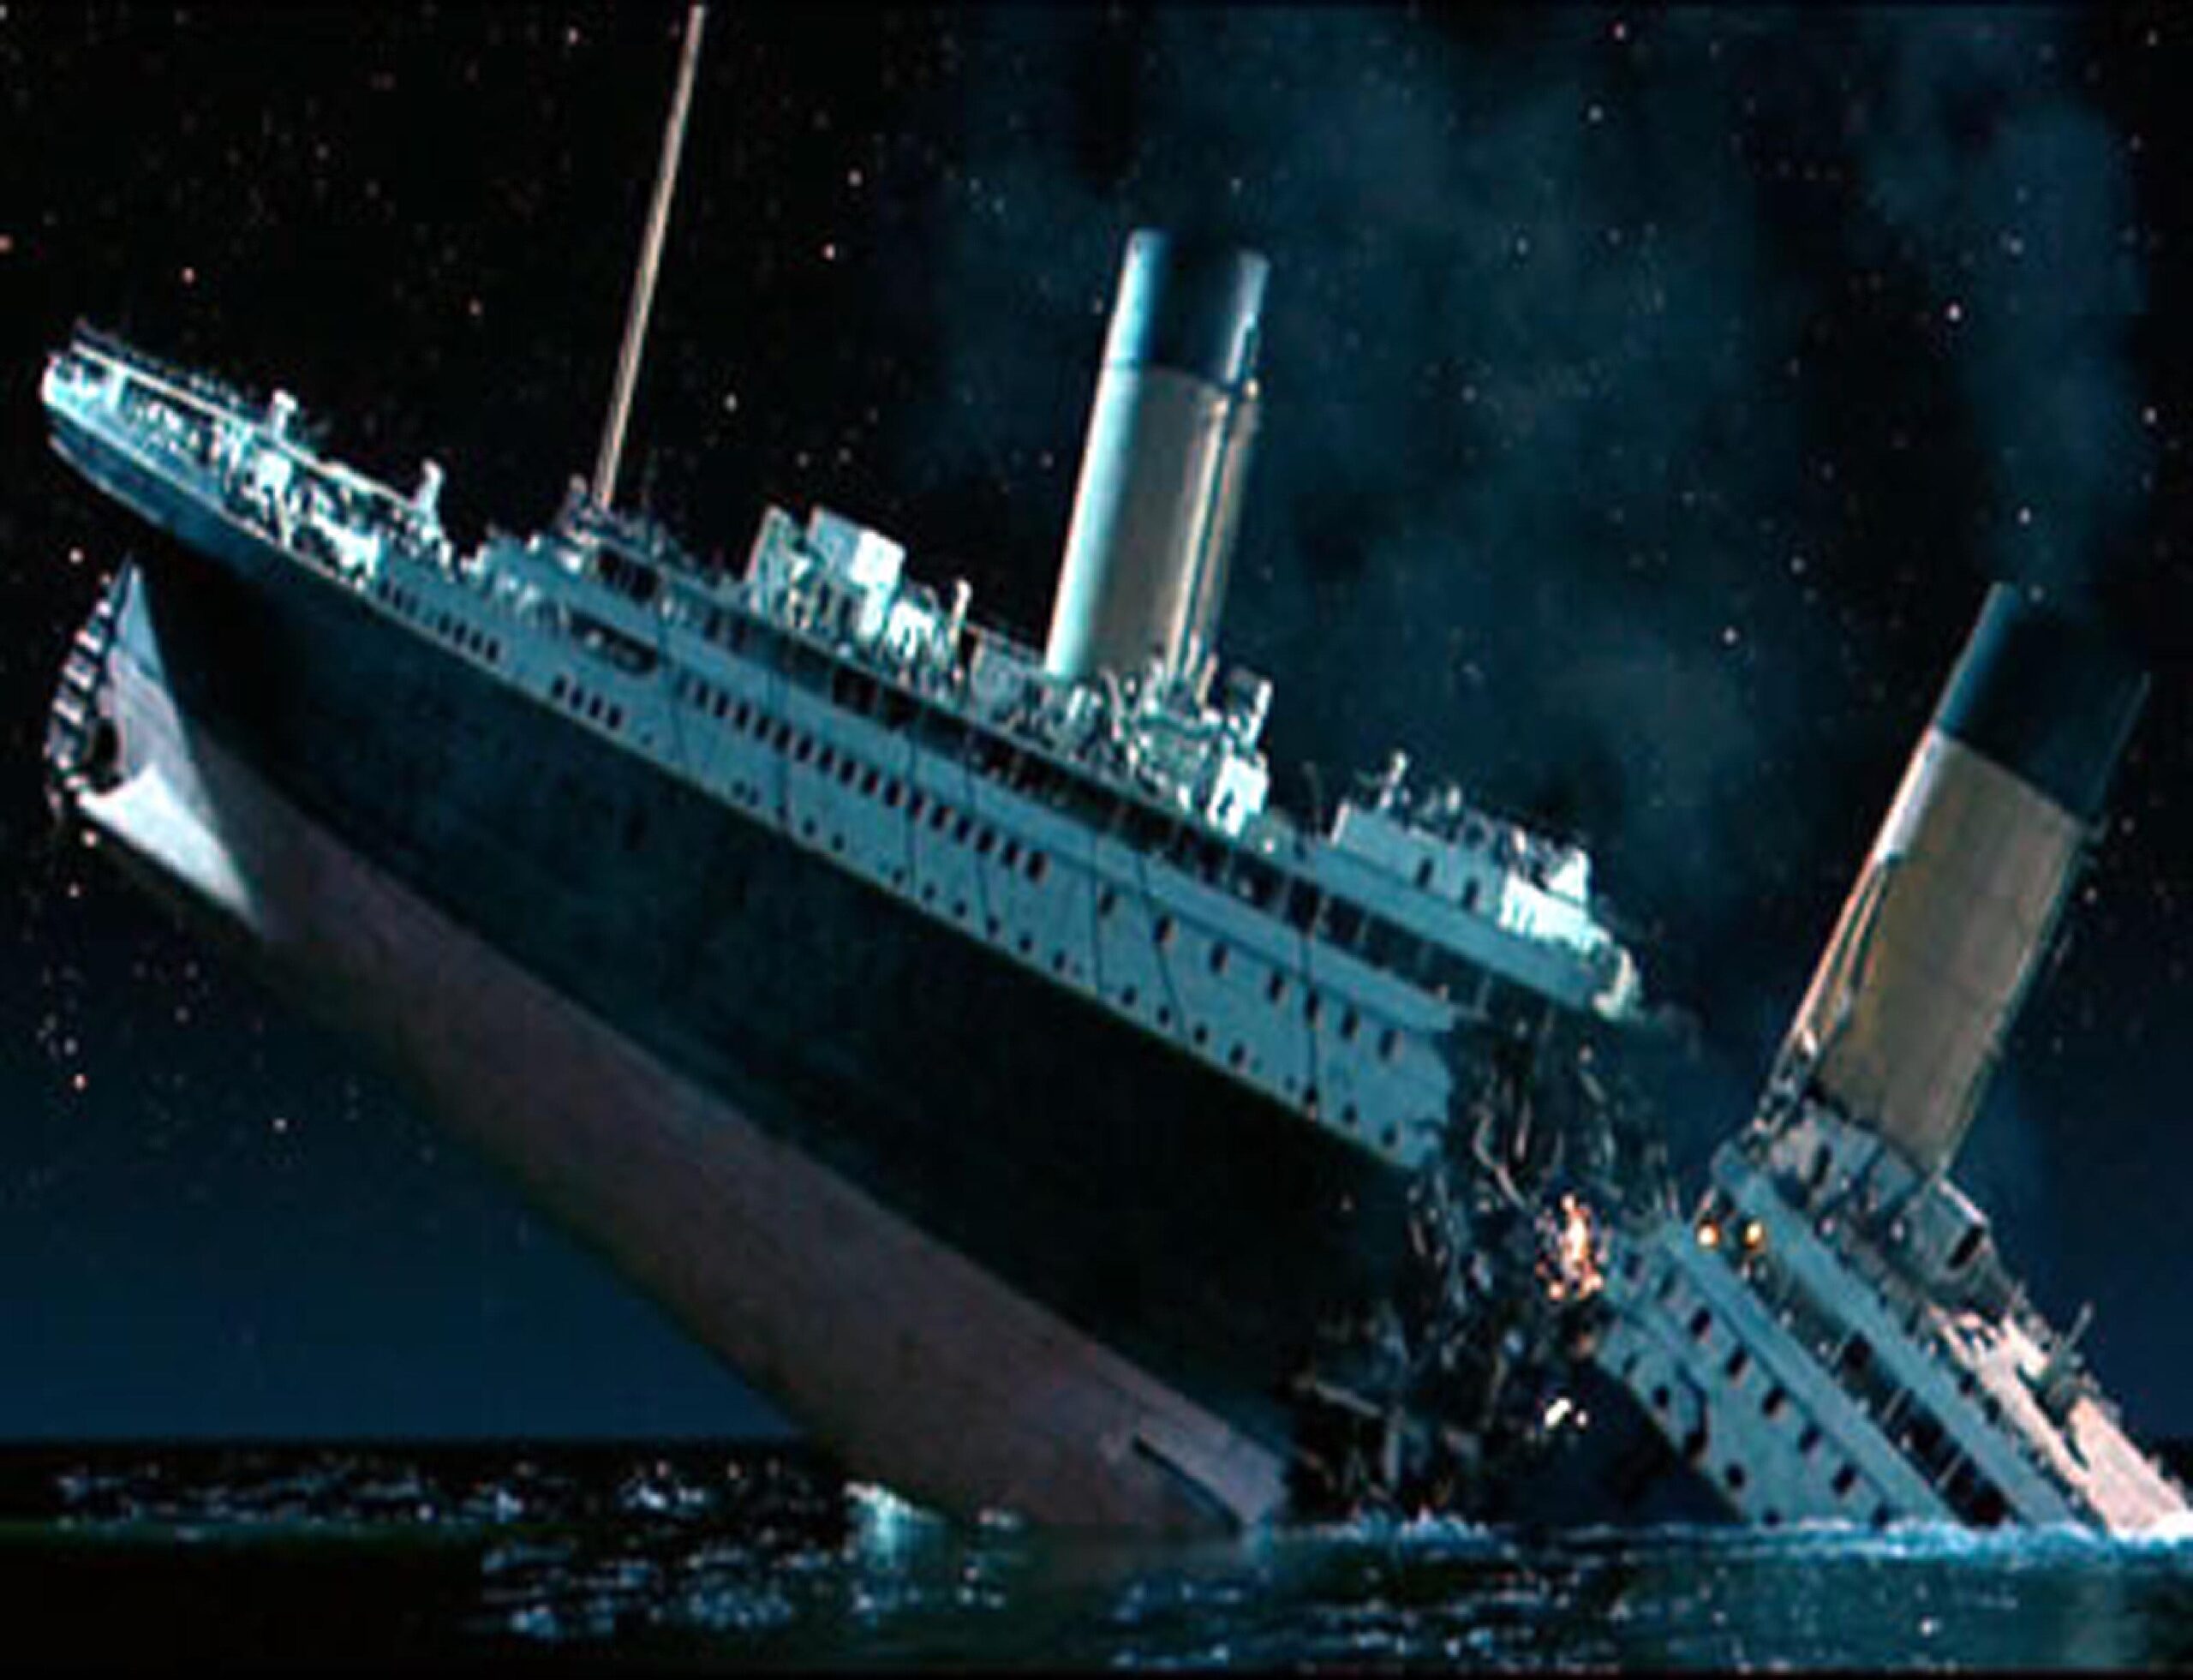 El Titanic No Se Hundió Fue El Olimpic Es La Teoría A 111 Años Del 14 De Abril De 1912 7982